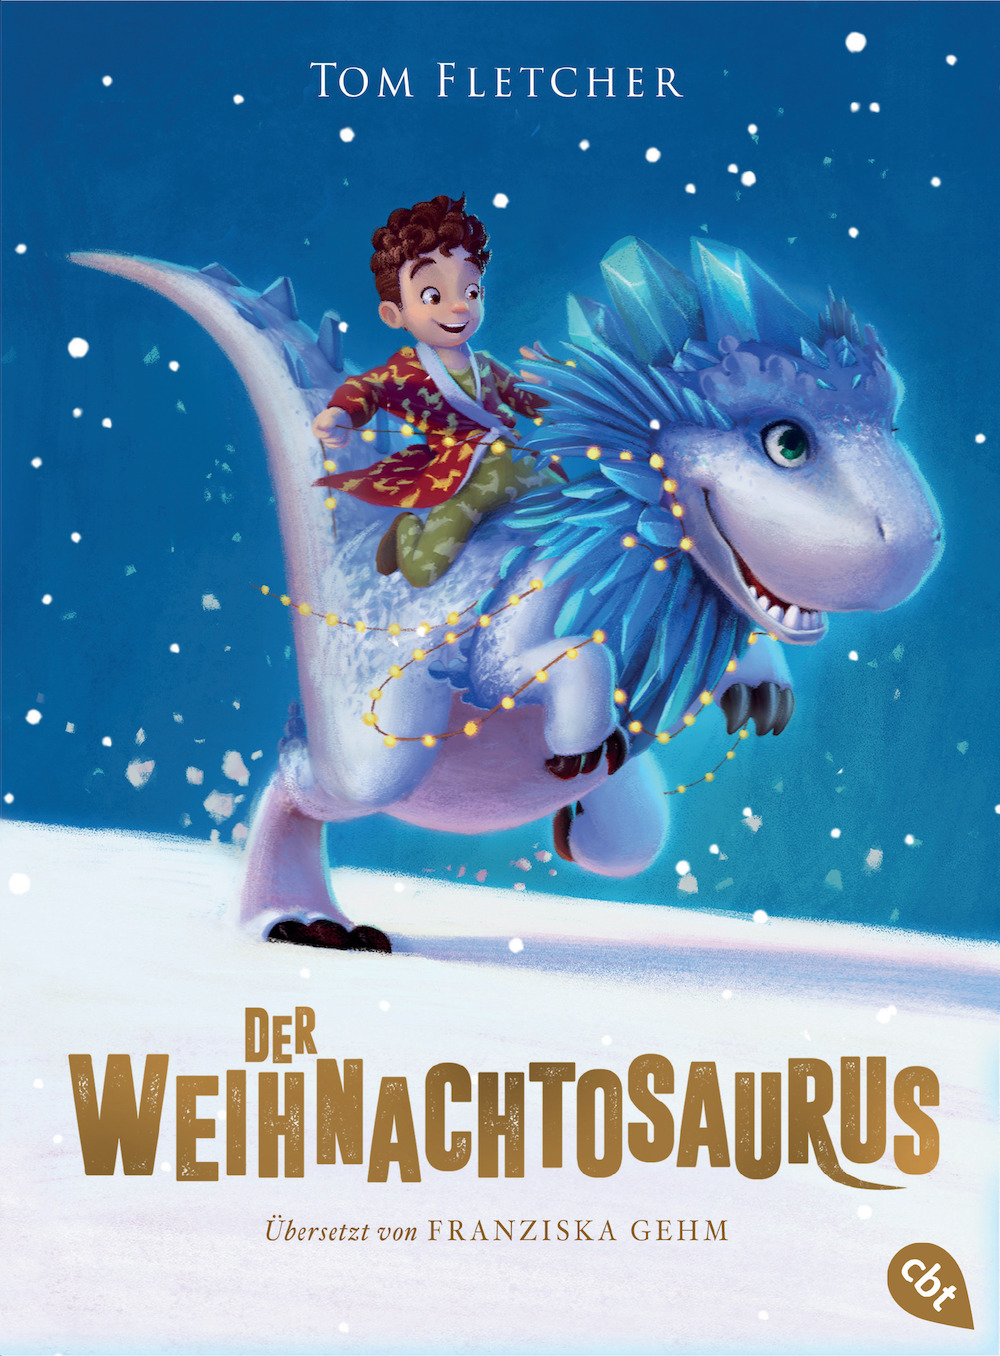 Der Weihnachtosaurus von Tom Fletcher